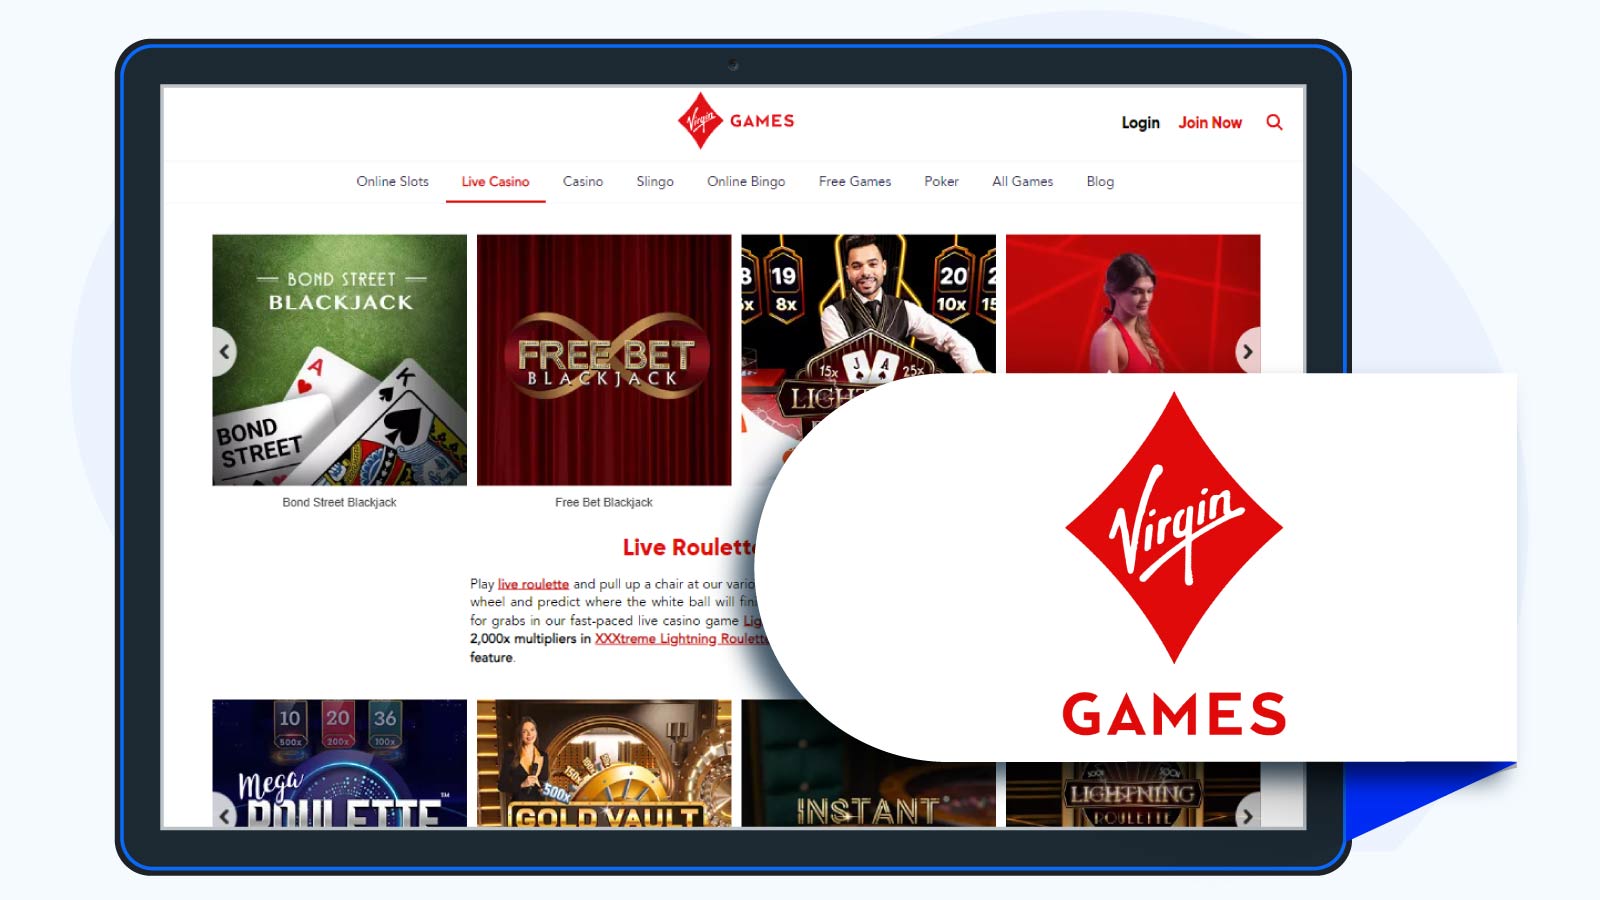 Virgin-Games-Casino-Evolution-Gaming